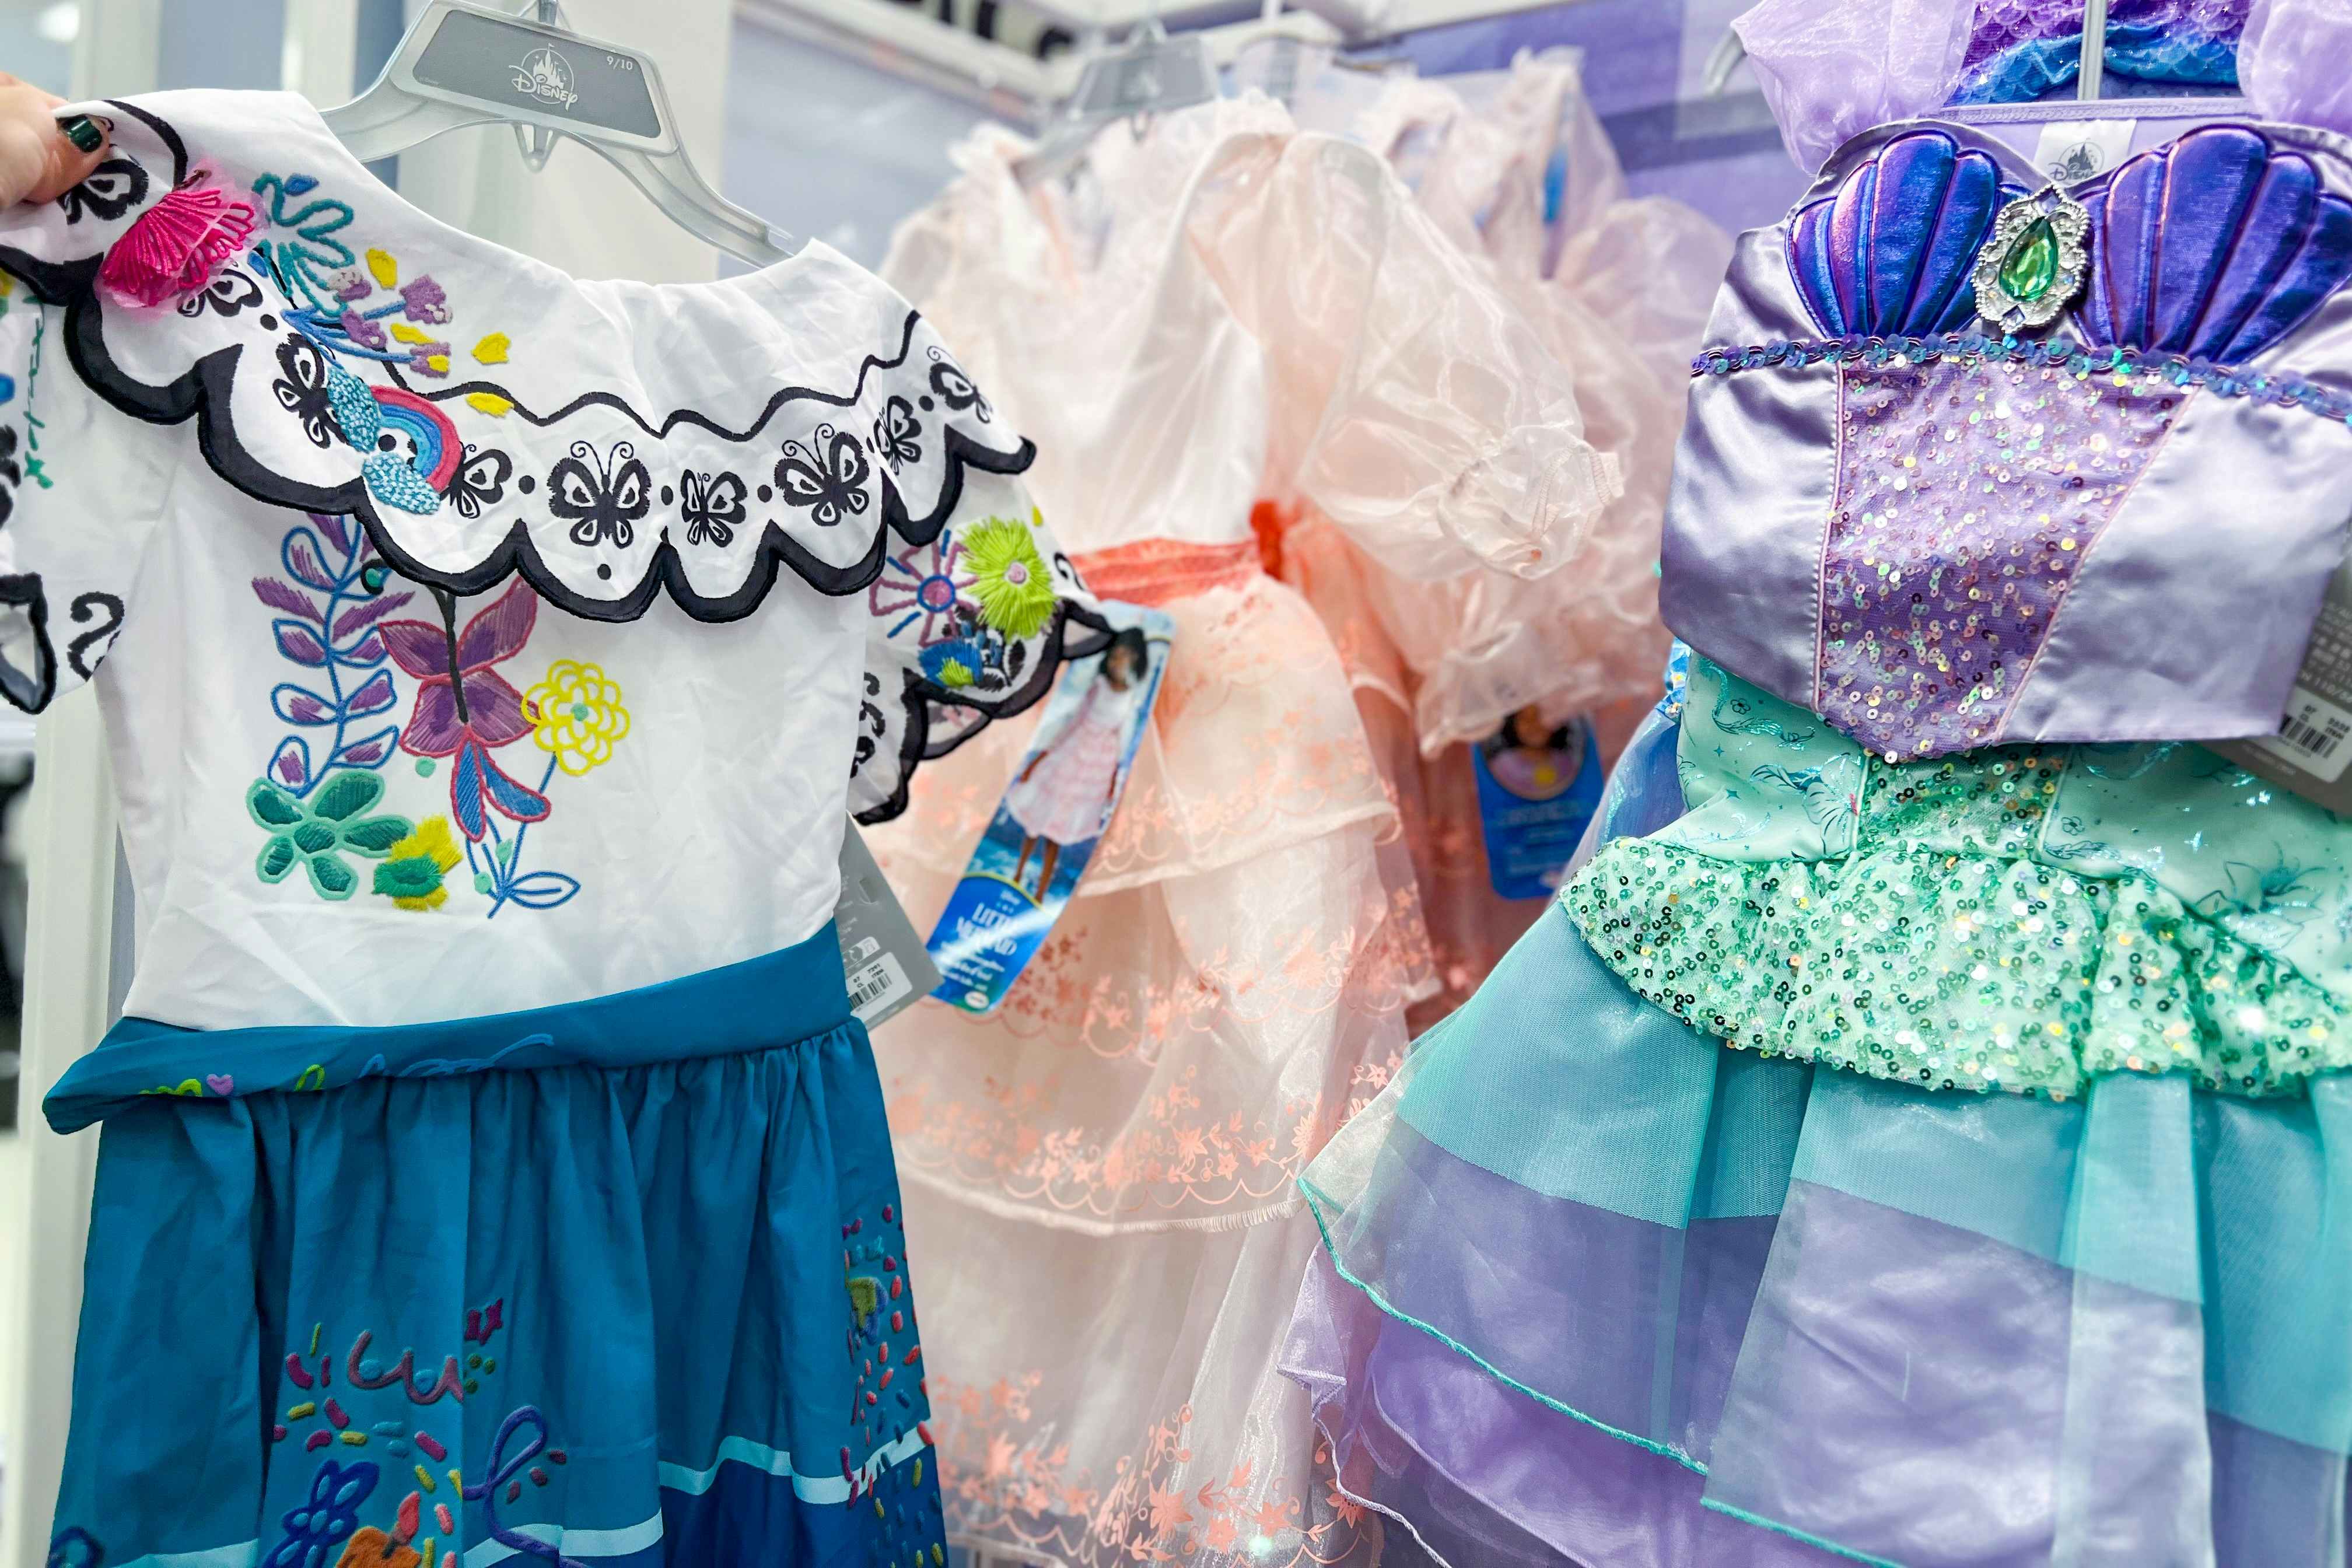 Disney Princess Dresses Are $9.49 at Target